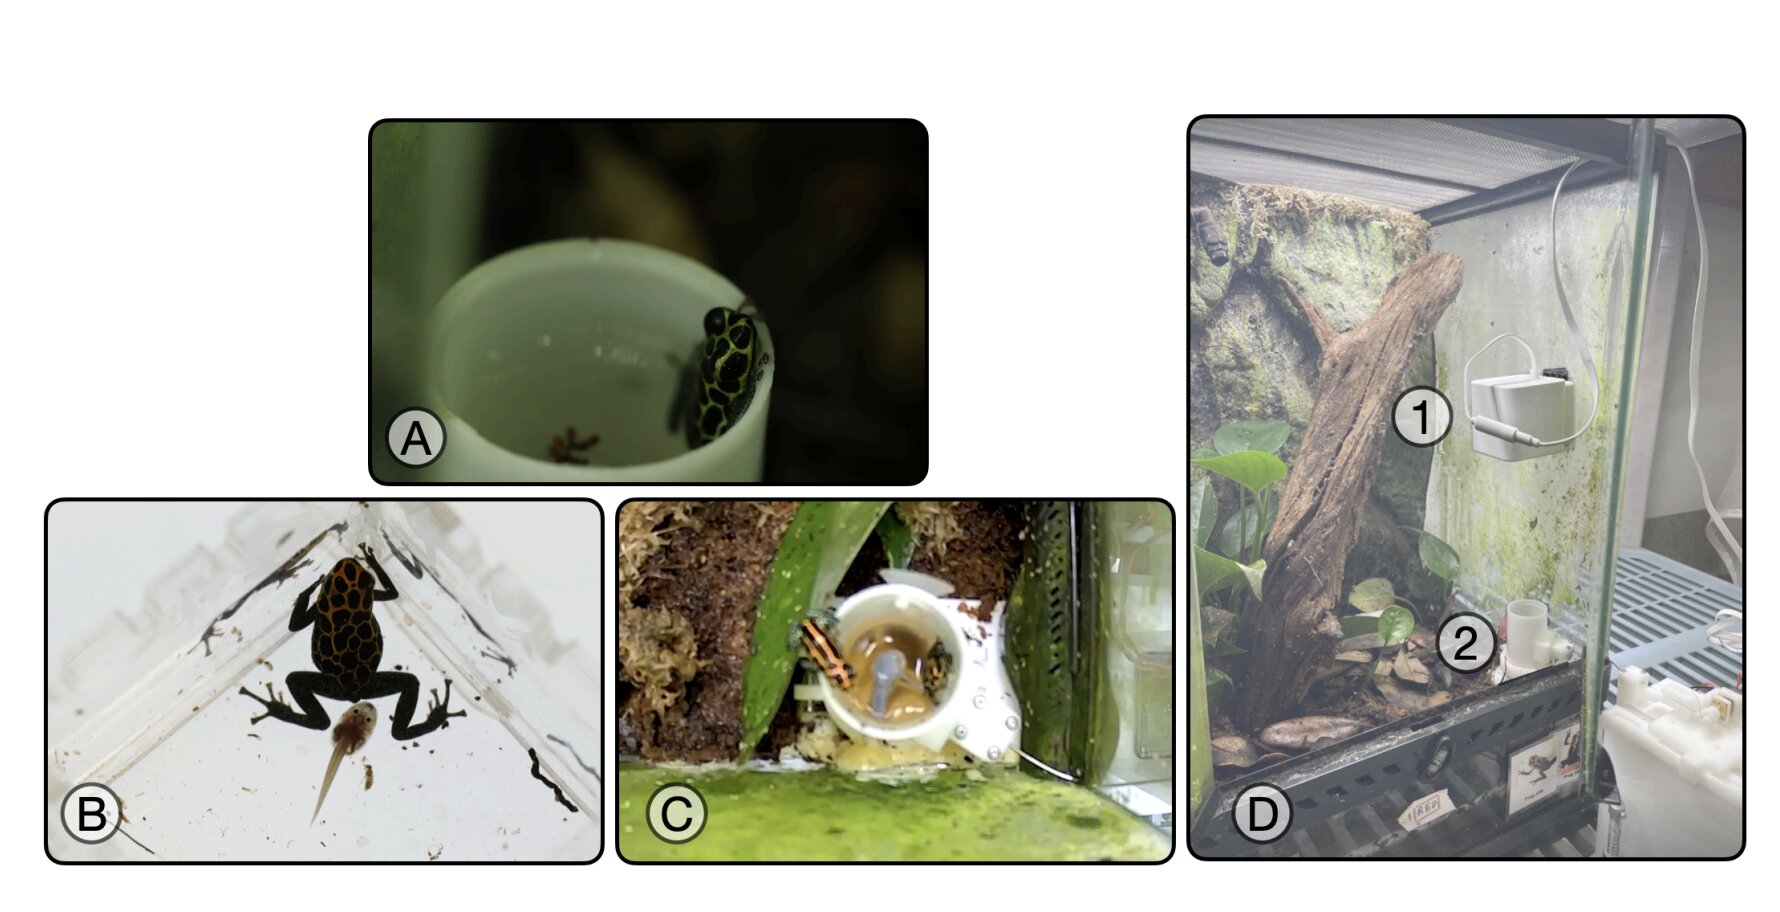 Изучение поведения ядовитых лягушек-дротиков при размножении с помощью роботов, похожих на головастиков.